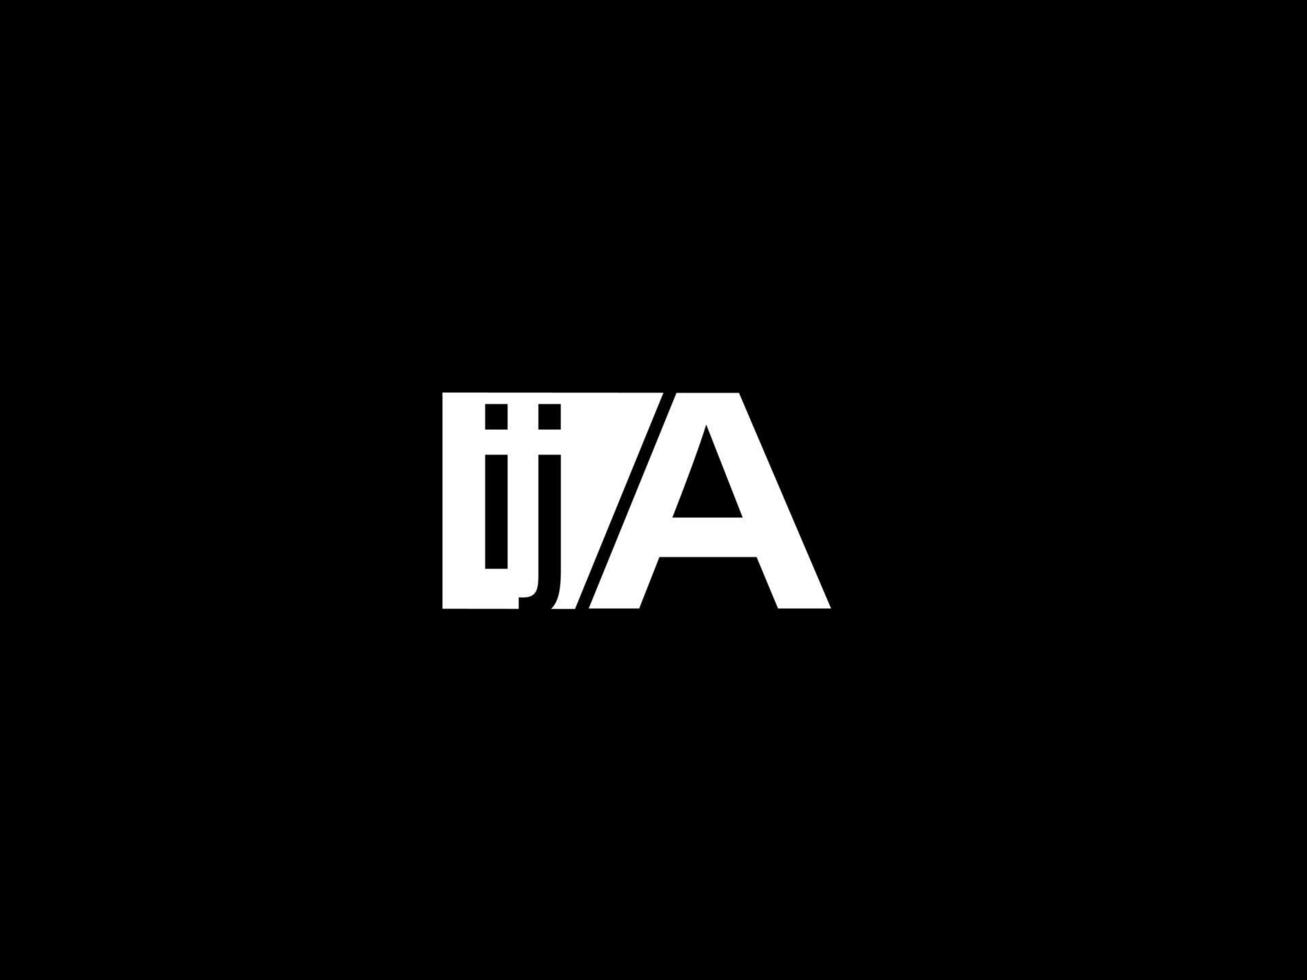 ija-Logo und Grafikdesign Vektorgrafiken, Symbole isoliert auf schwarzem Hintergrund vektor